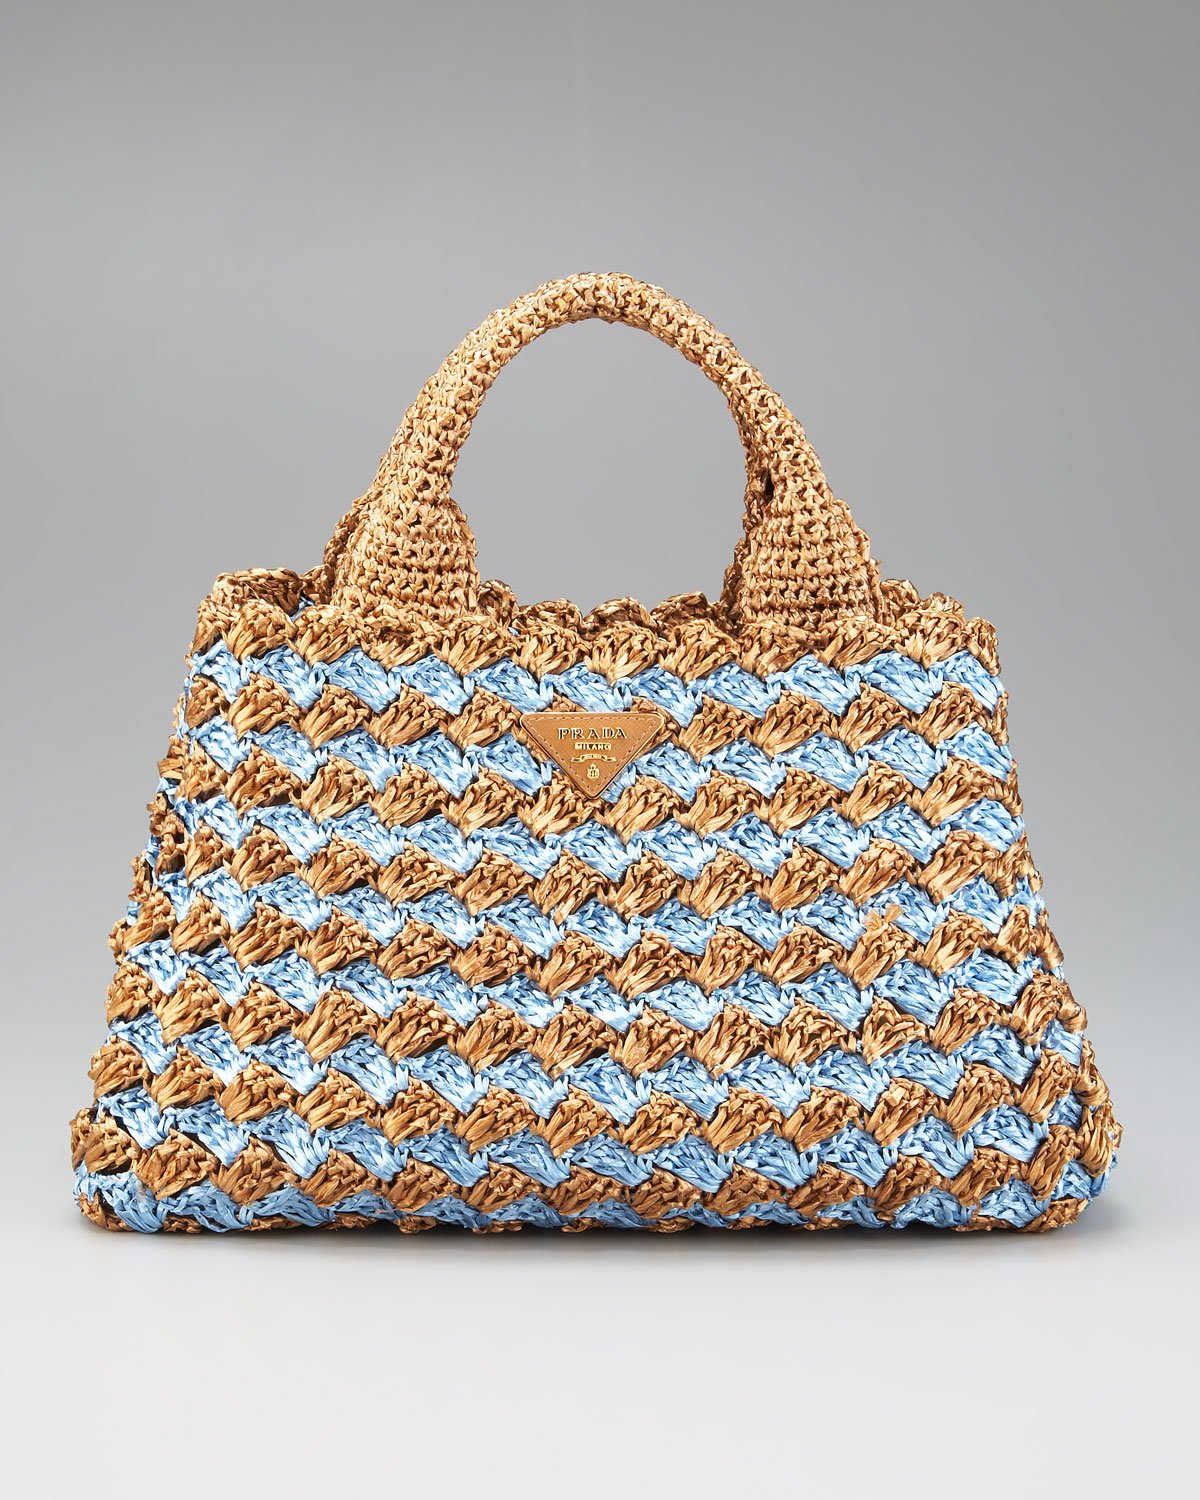 Prada Bi-color Crocheted Raffia Tote in Blue (Natural) - Lyst